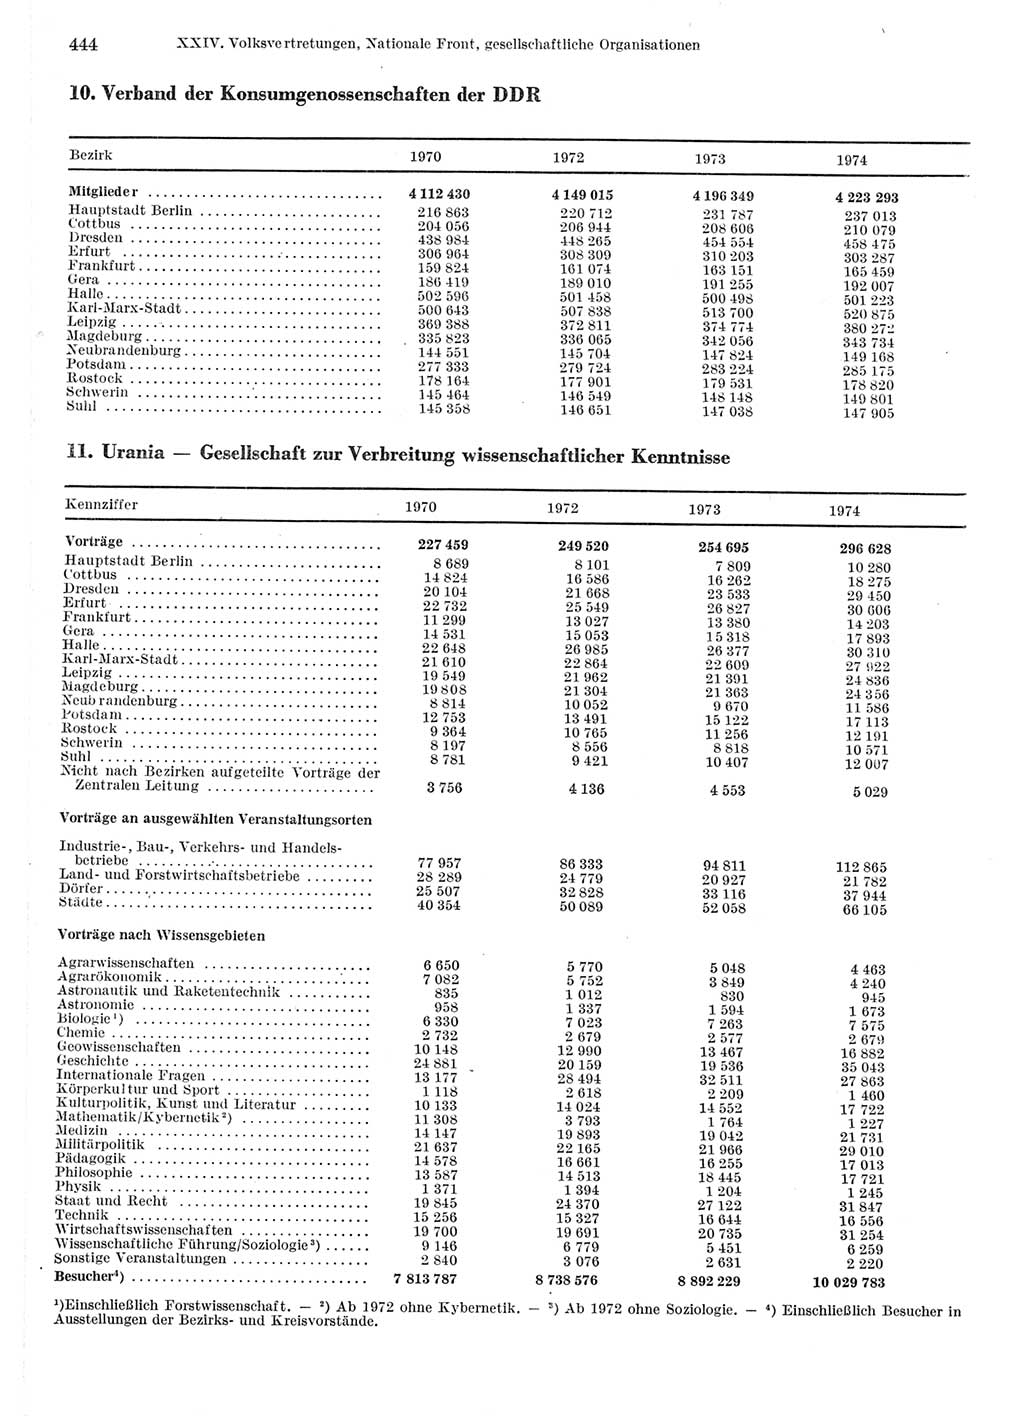 Statistisches Jahrbuch der Deutschen Demokratischen Republik (DDR) 1975, Seite 444 (Stat. Jb. DDR 1975, S. 444)